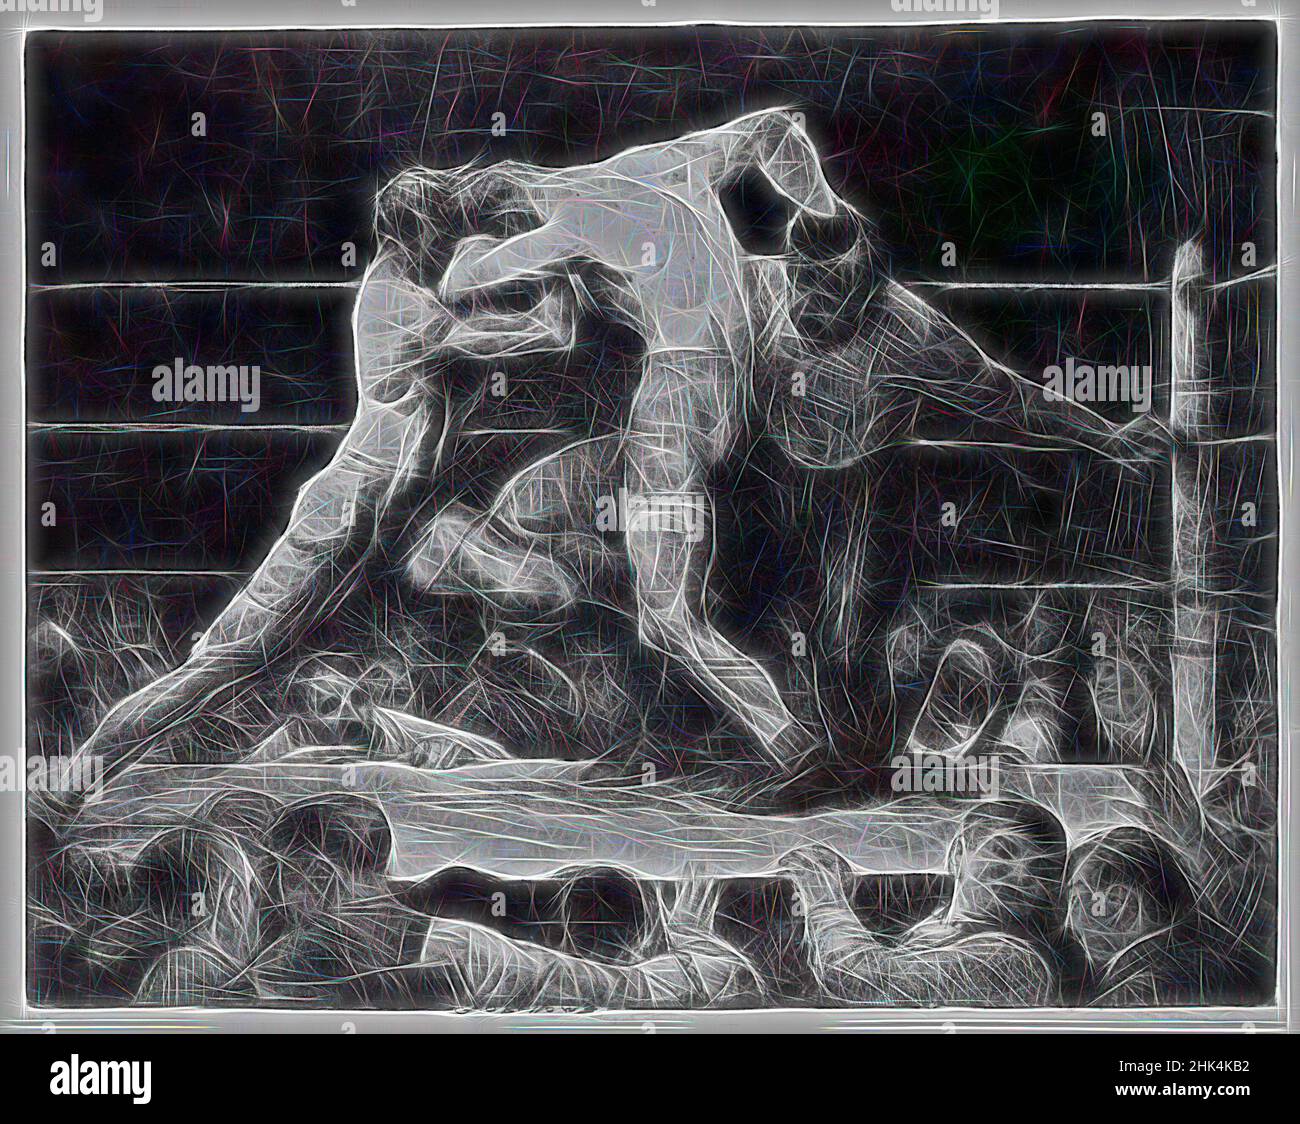 Inspirado por Stag en Sharkey's, George Wesley Bellows, American, 1882-1925, Litografía sobre papel blanco de la paloma, 1917, Imagen: 18 11/16 x 23 3/4 in., 47,5 x 60,4 cm, boxeo, figuras masculinas, movimiento, deportes, Reimaginado por Artotop. Arte clásico reinventado con un toque moderno. Diseño de brillo cálido y alegre y luminosidad e radiación de rayos de luz. Fotografía inspirada en el surrealismo y el futurismo, que abarca la energía dinámica de la tecnología moderna, el movimiento, la velocidad y la revolución de la cultura Foto de stock